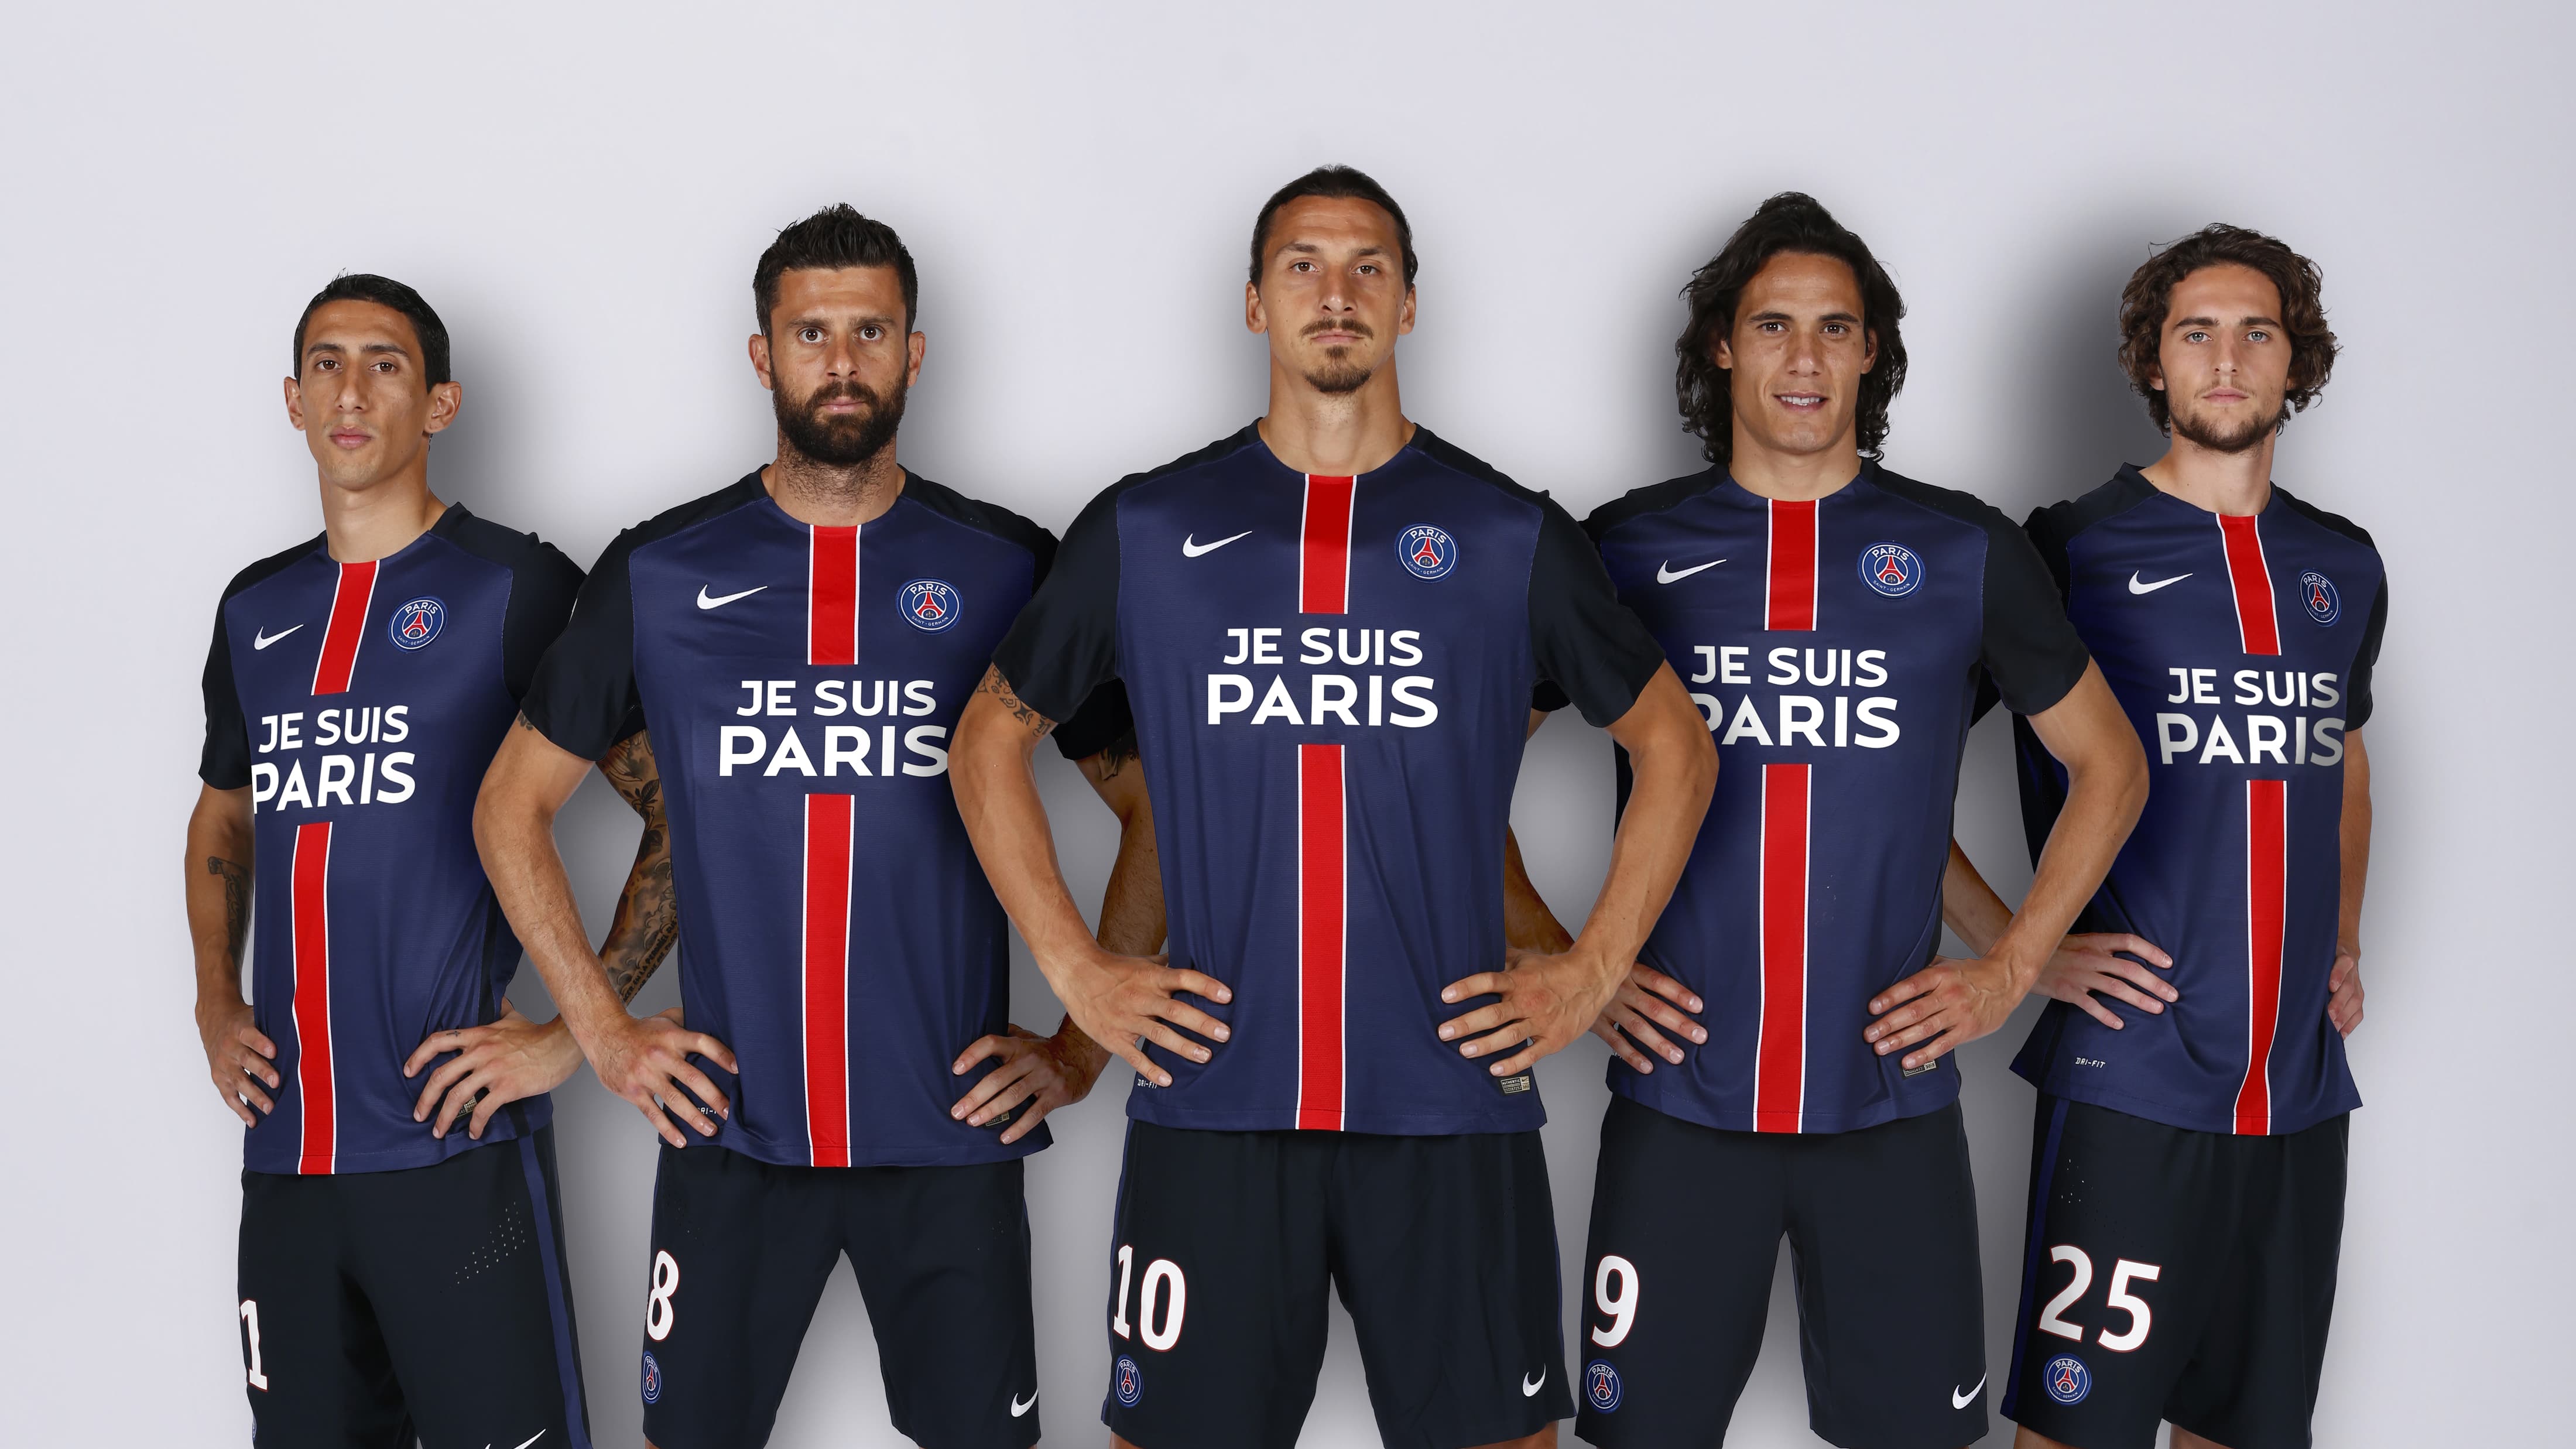 Le maillot du PSG "Je suis Paris" bientôt en vente?